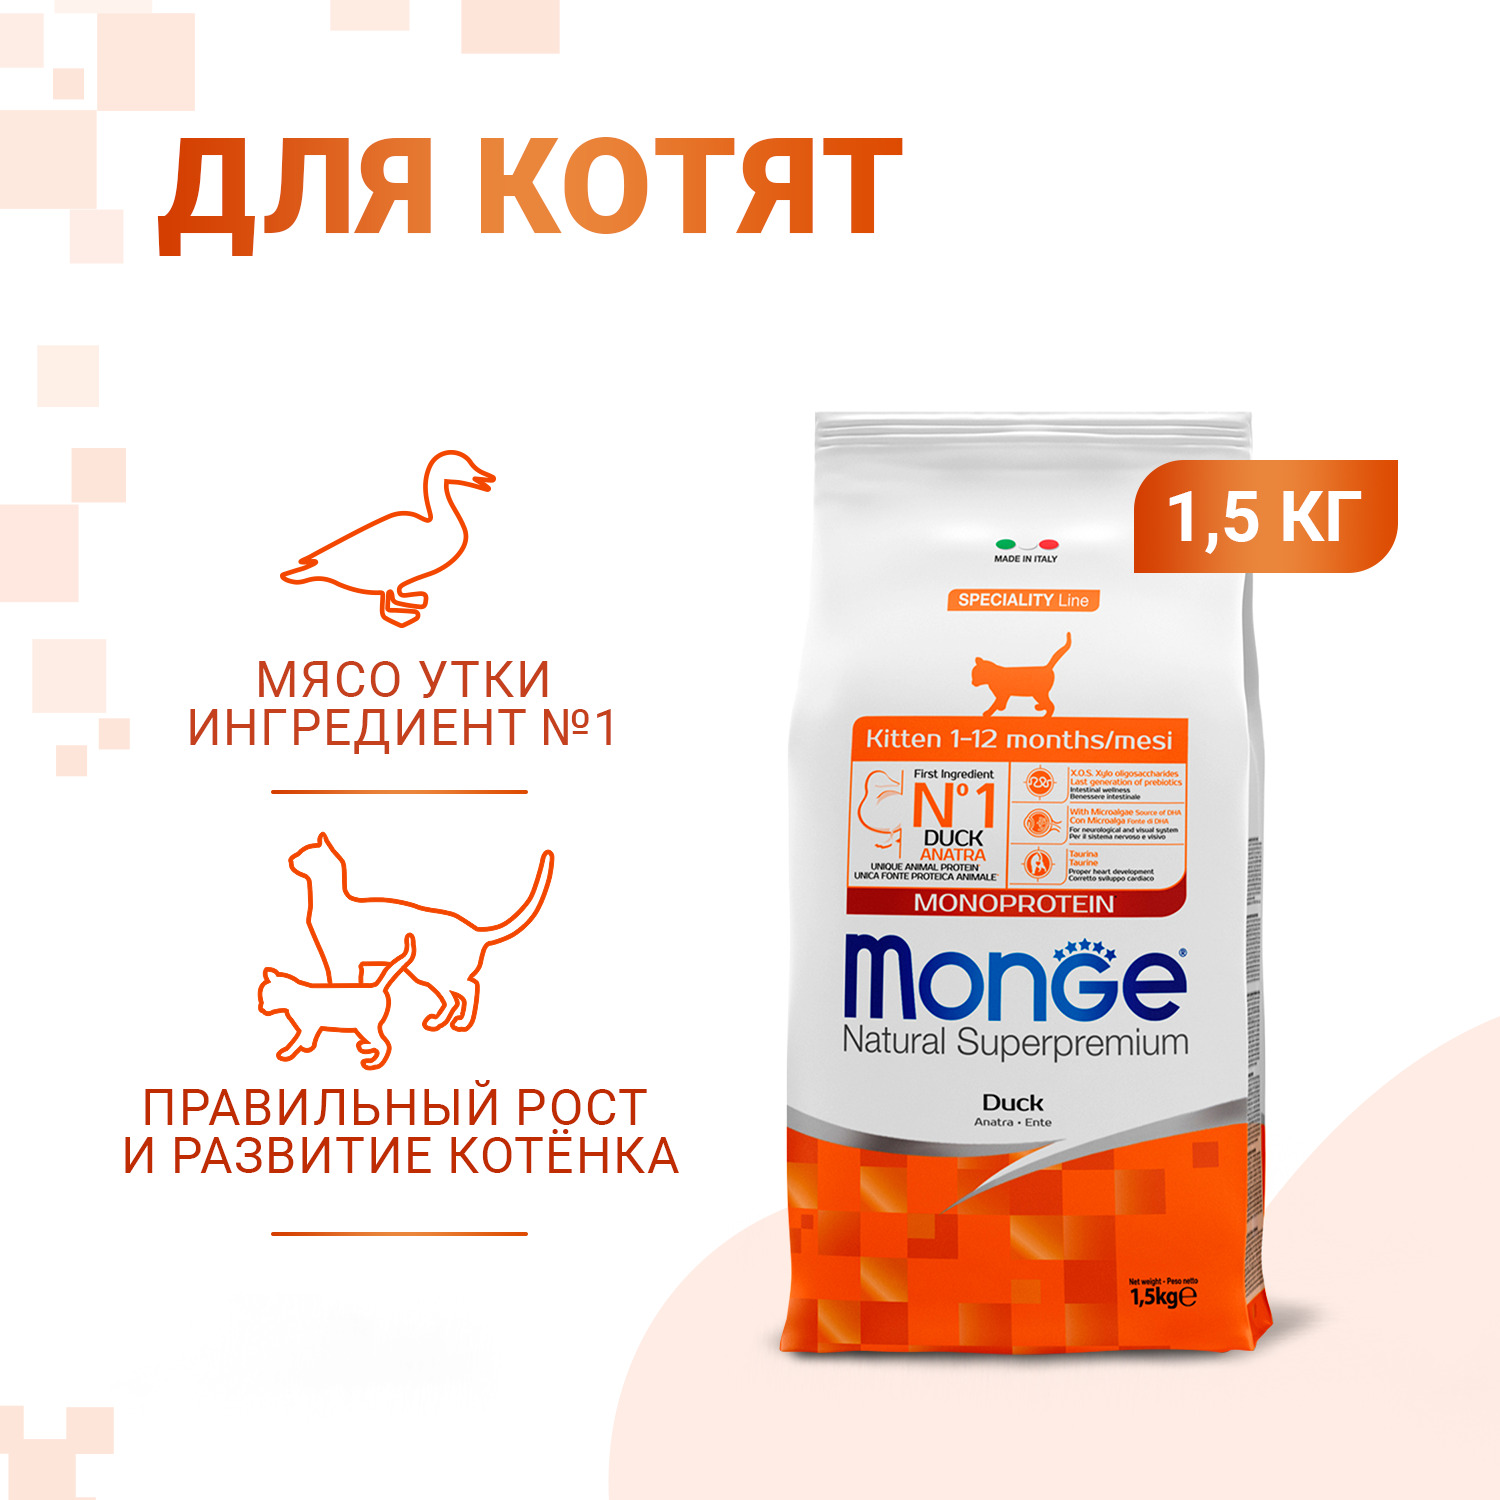 Сухой корм Monge Cat Speciality Line Monoprotein для котят и беременных кошек, из утки 1,5 кг